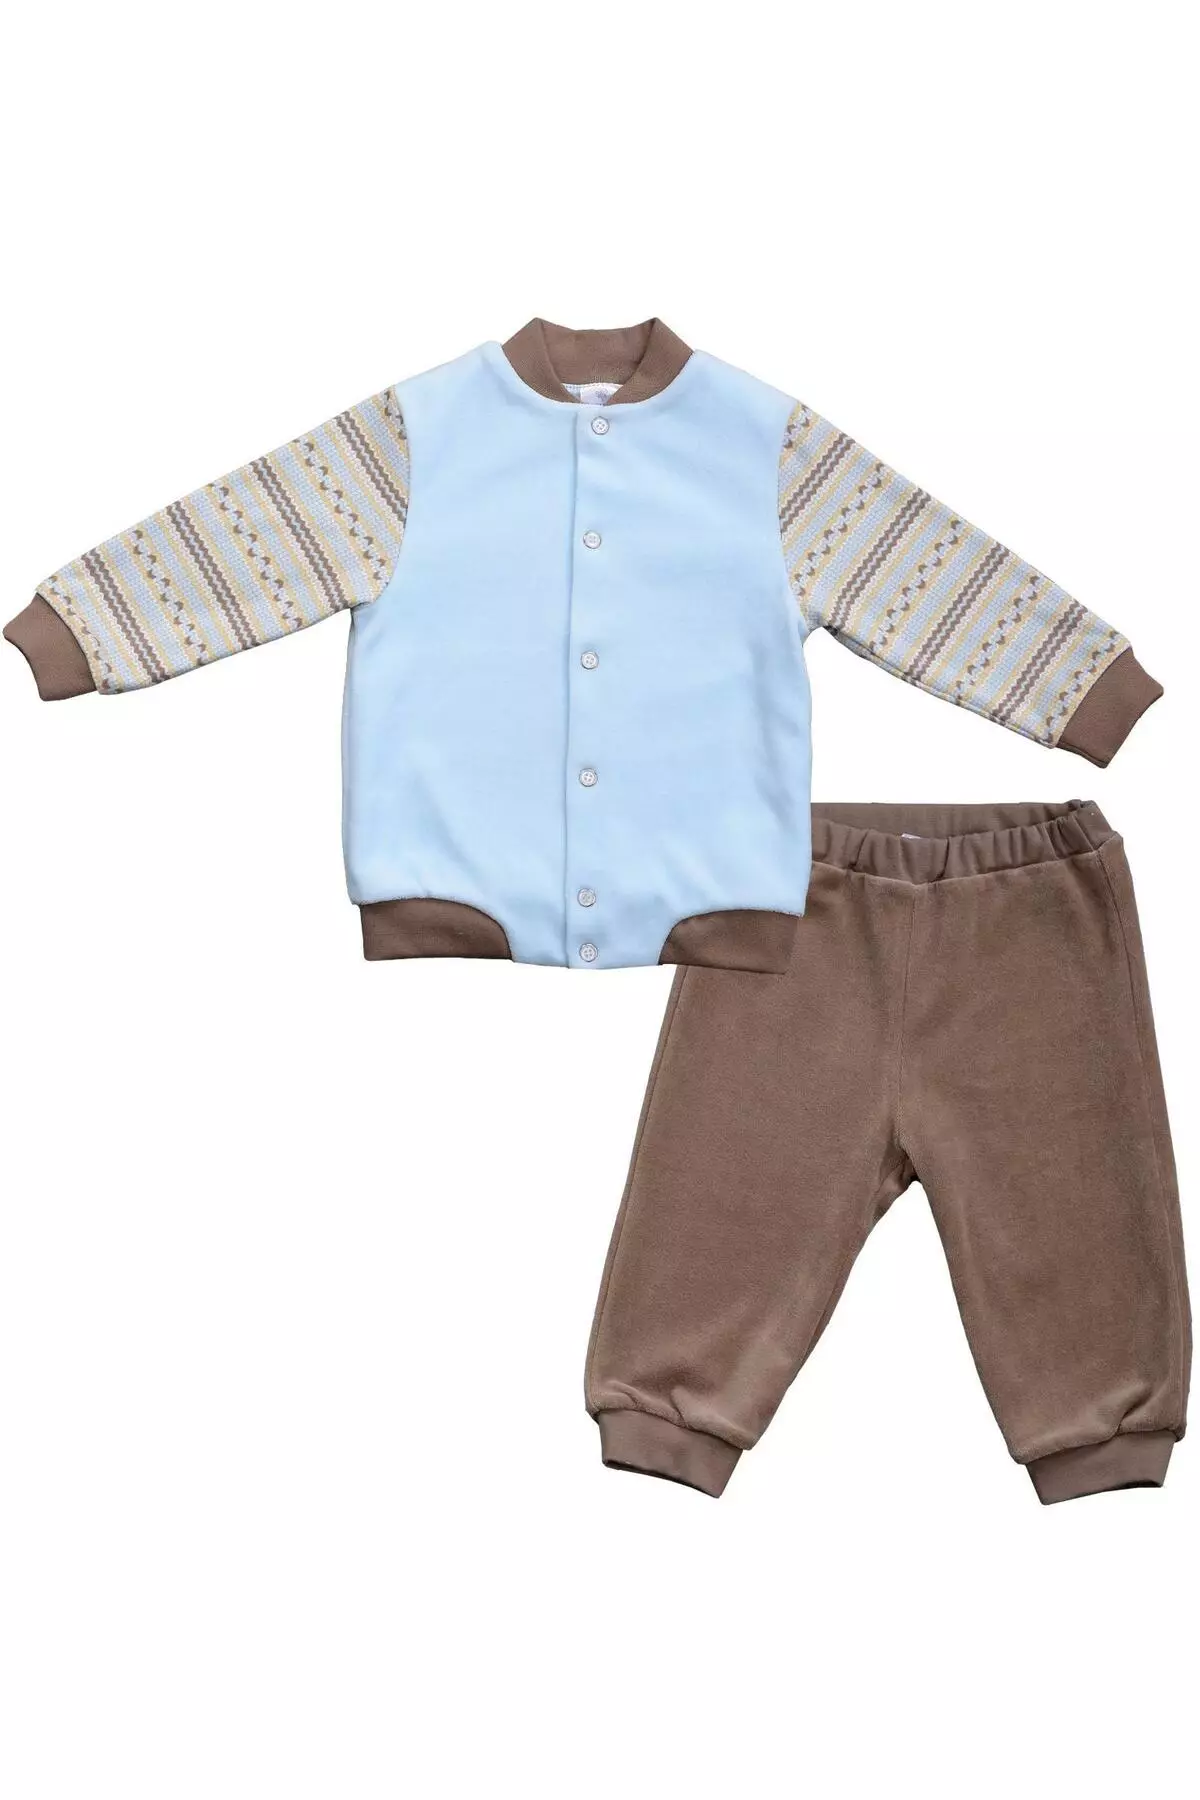 Мамуляндія (62 фото): дитячий одяг, боді і жилети для новонароджених, відгуки про дизайнерських речах популярної фабрики 3900_41